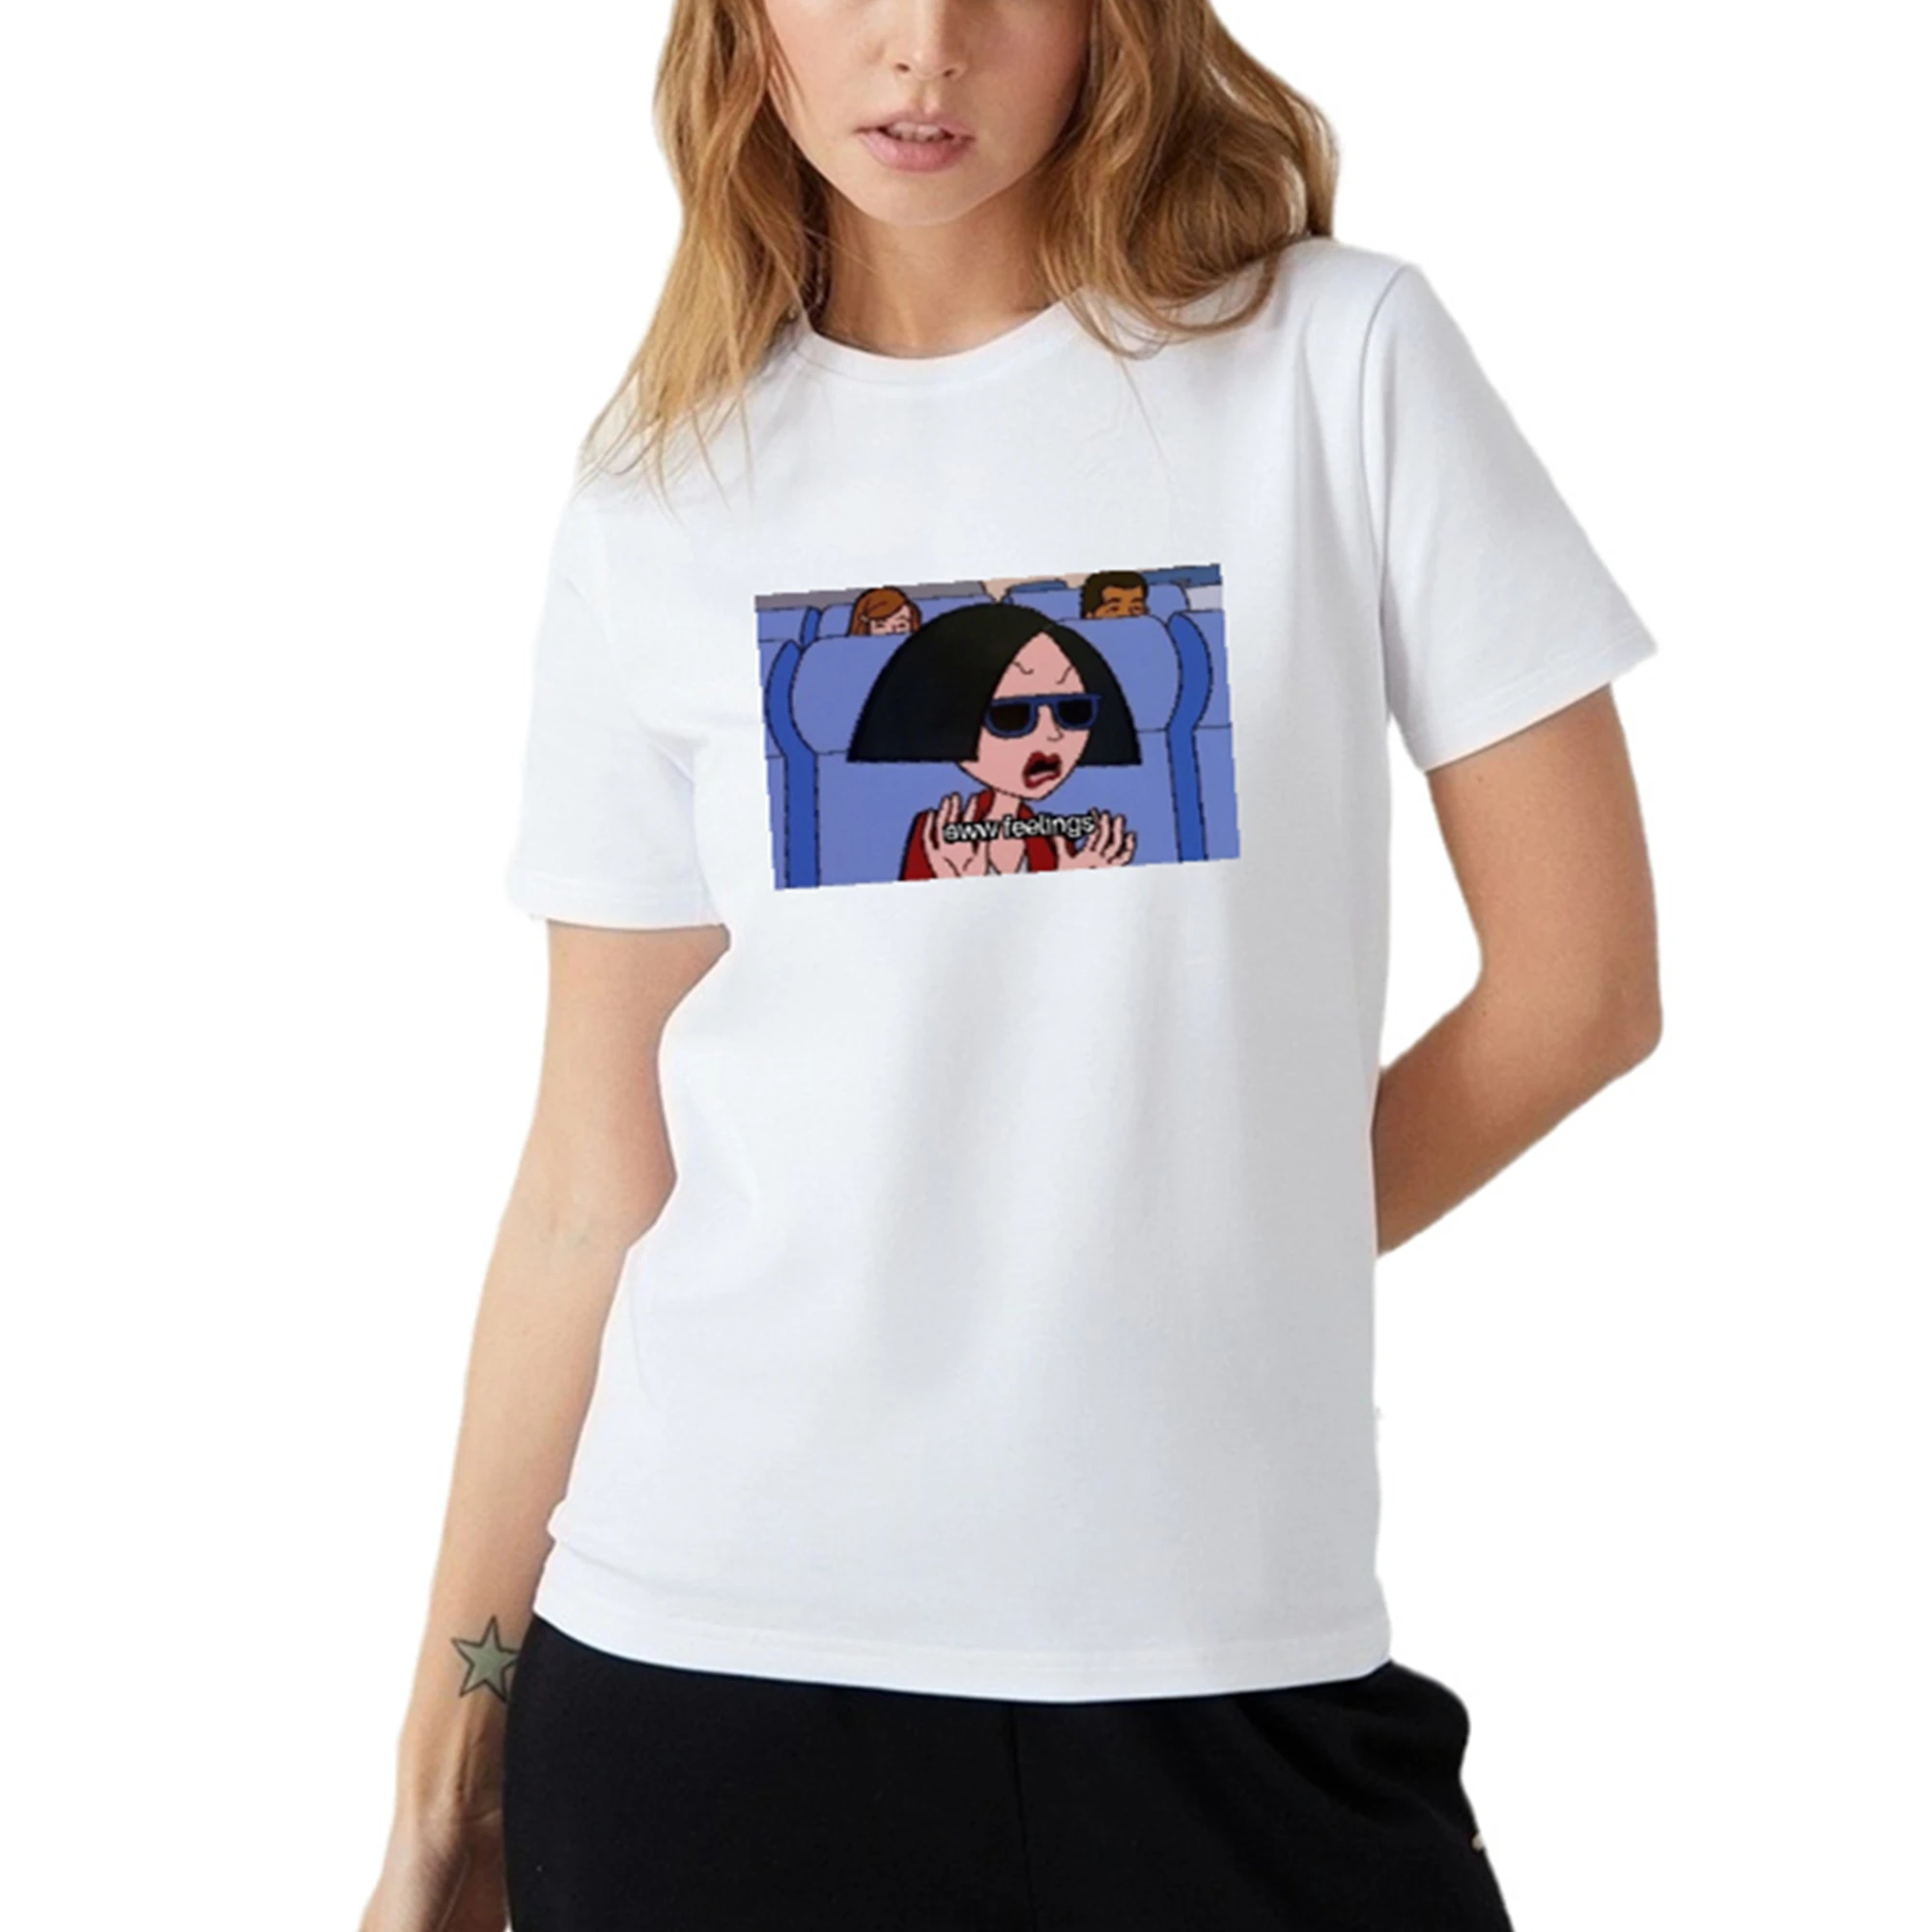 

Женская футболка Porzingis, летняя модная футболка с надписью на русском языке